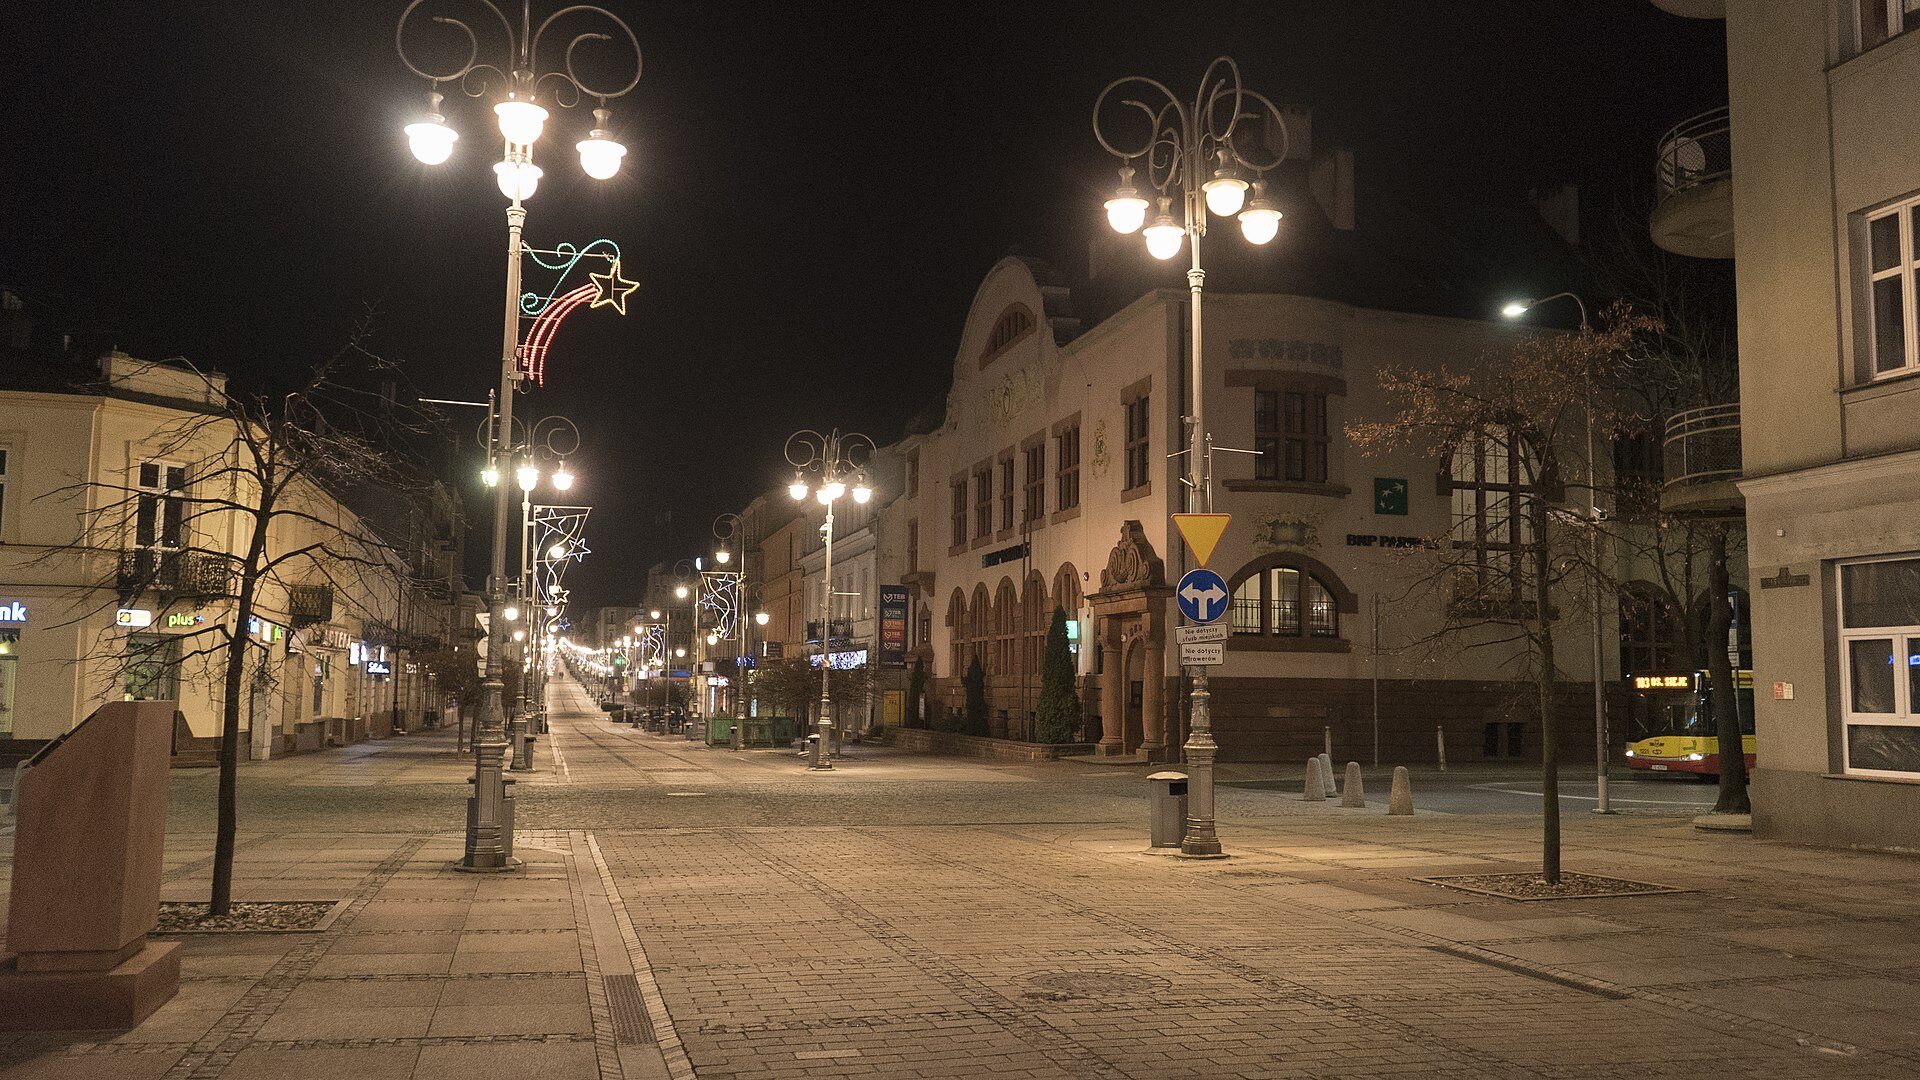 Ulica Sienkiewicza, reprezentacyjna ulica widoczna na zdjęciu, znajduje się w: